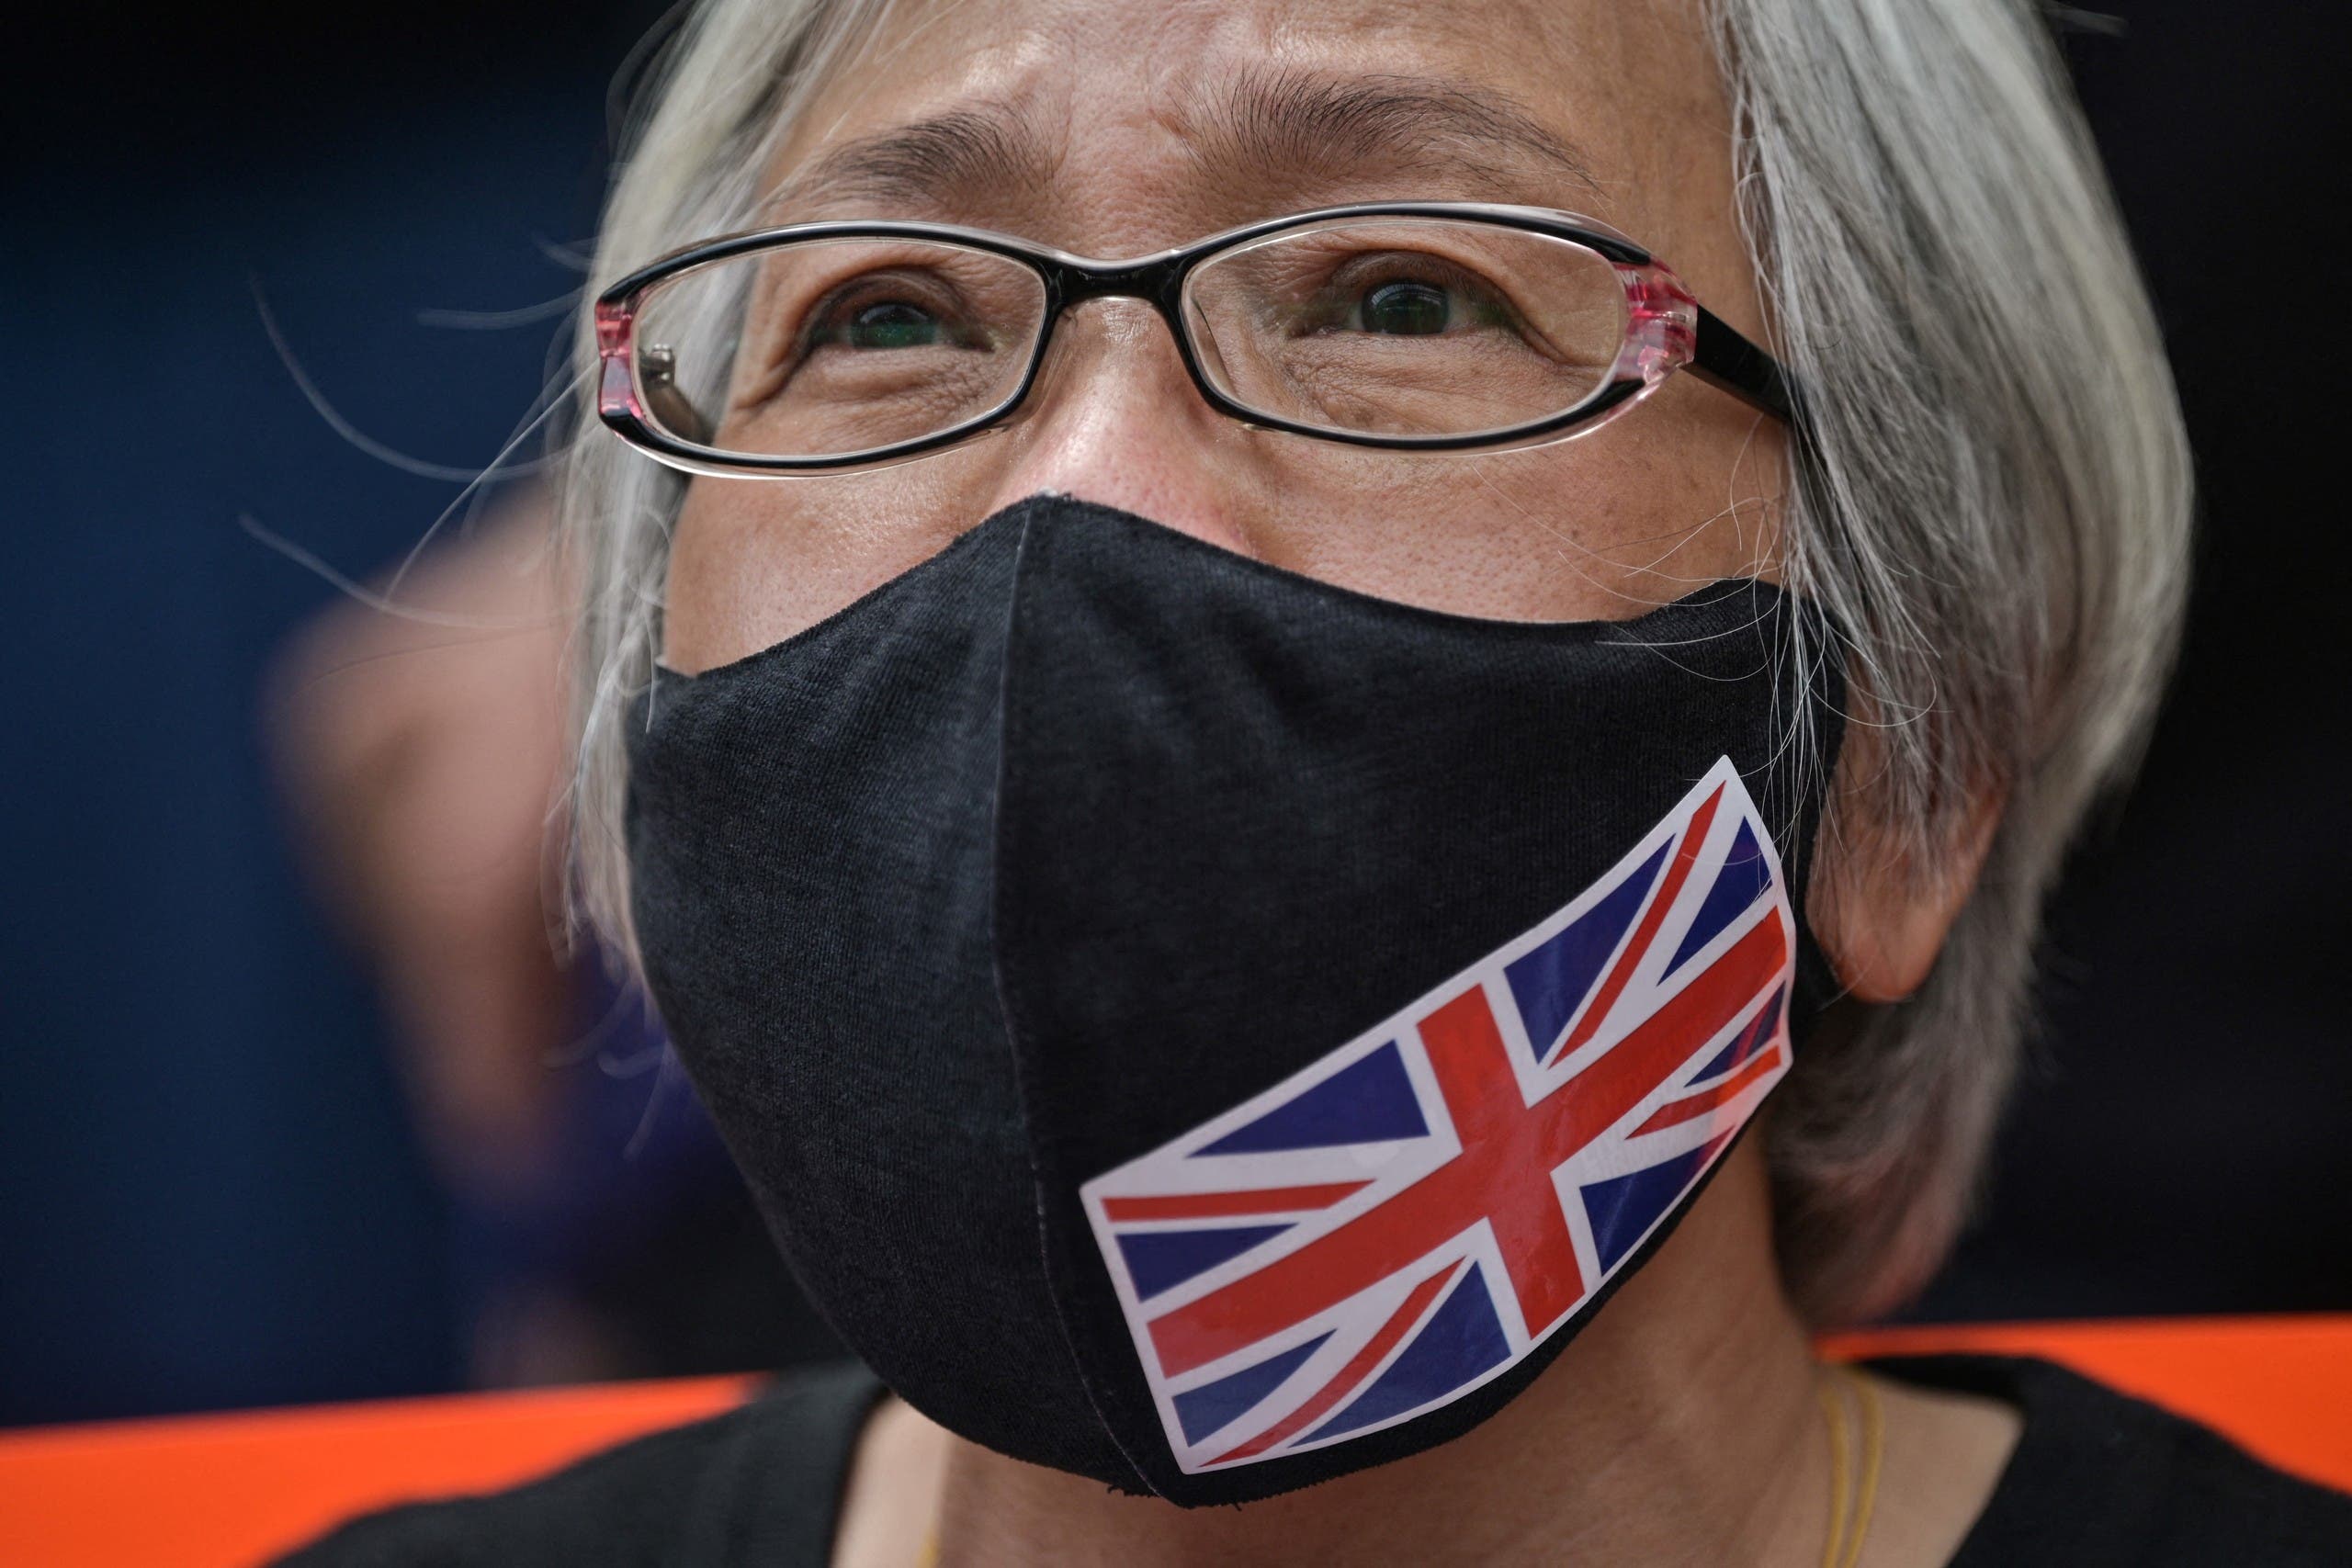 ألكسندرا وونغ خلال احتجاج سابق في هونغ كونغ (أرشيفية)